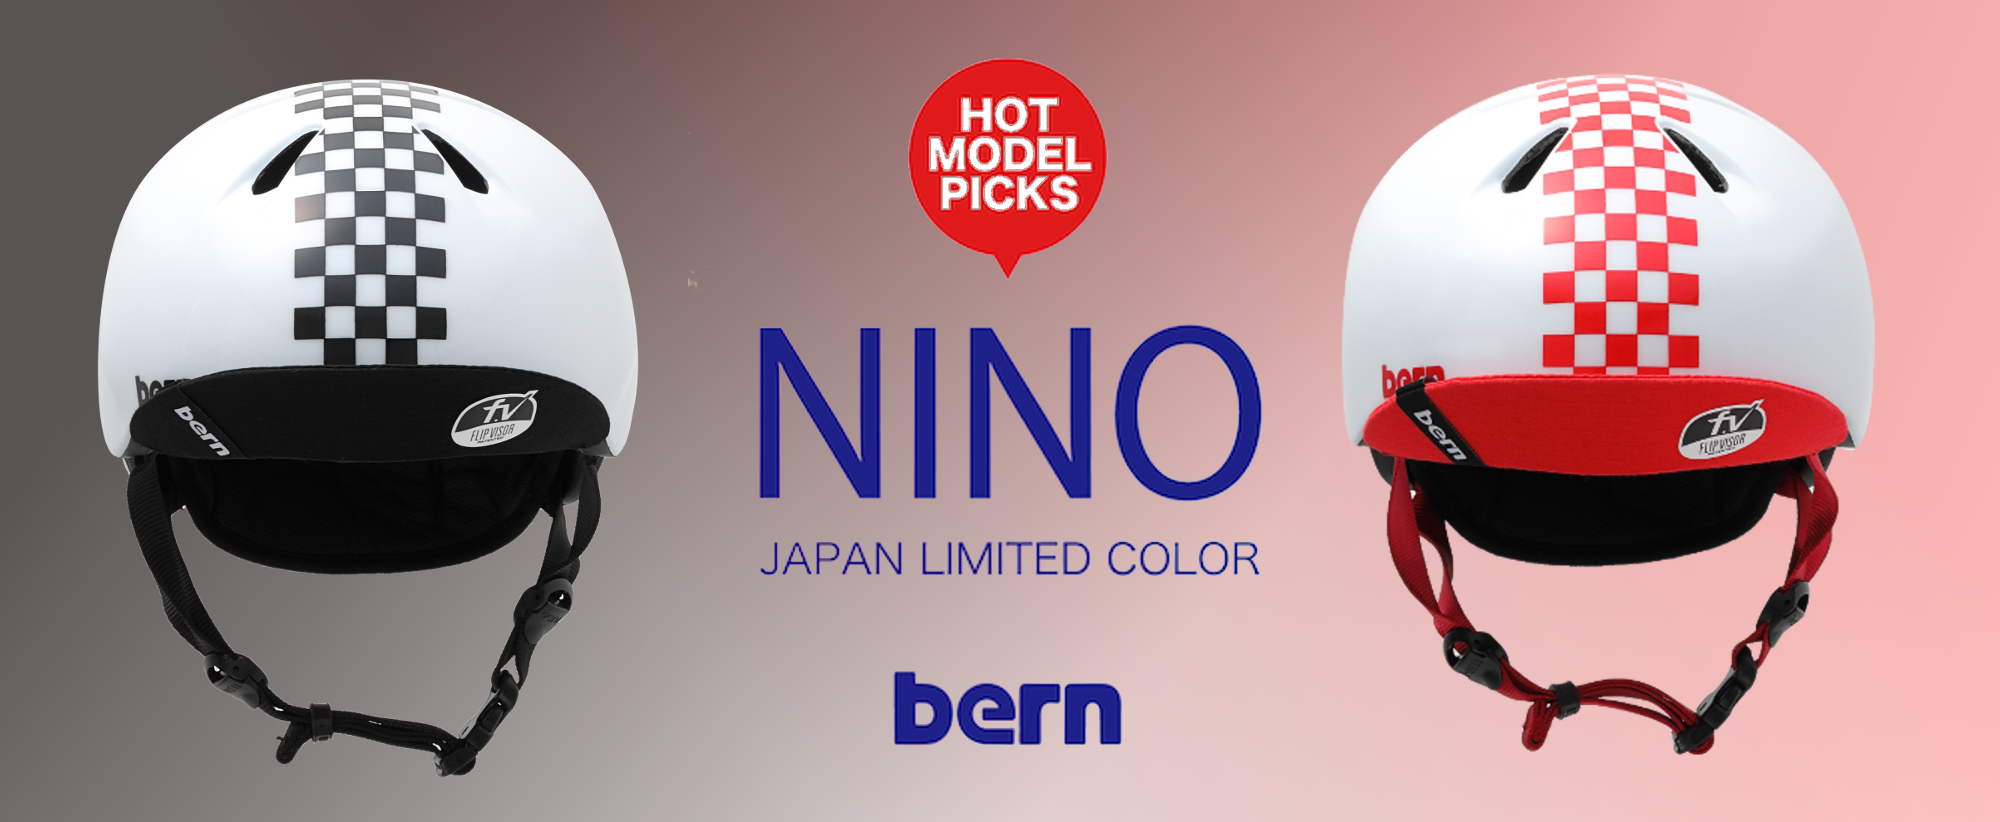 bern【NINO Japan Limited】チェッカー柄が登場!! - 自転車雑貨 FLIP＆FLOP